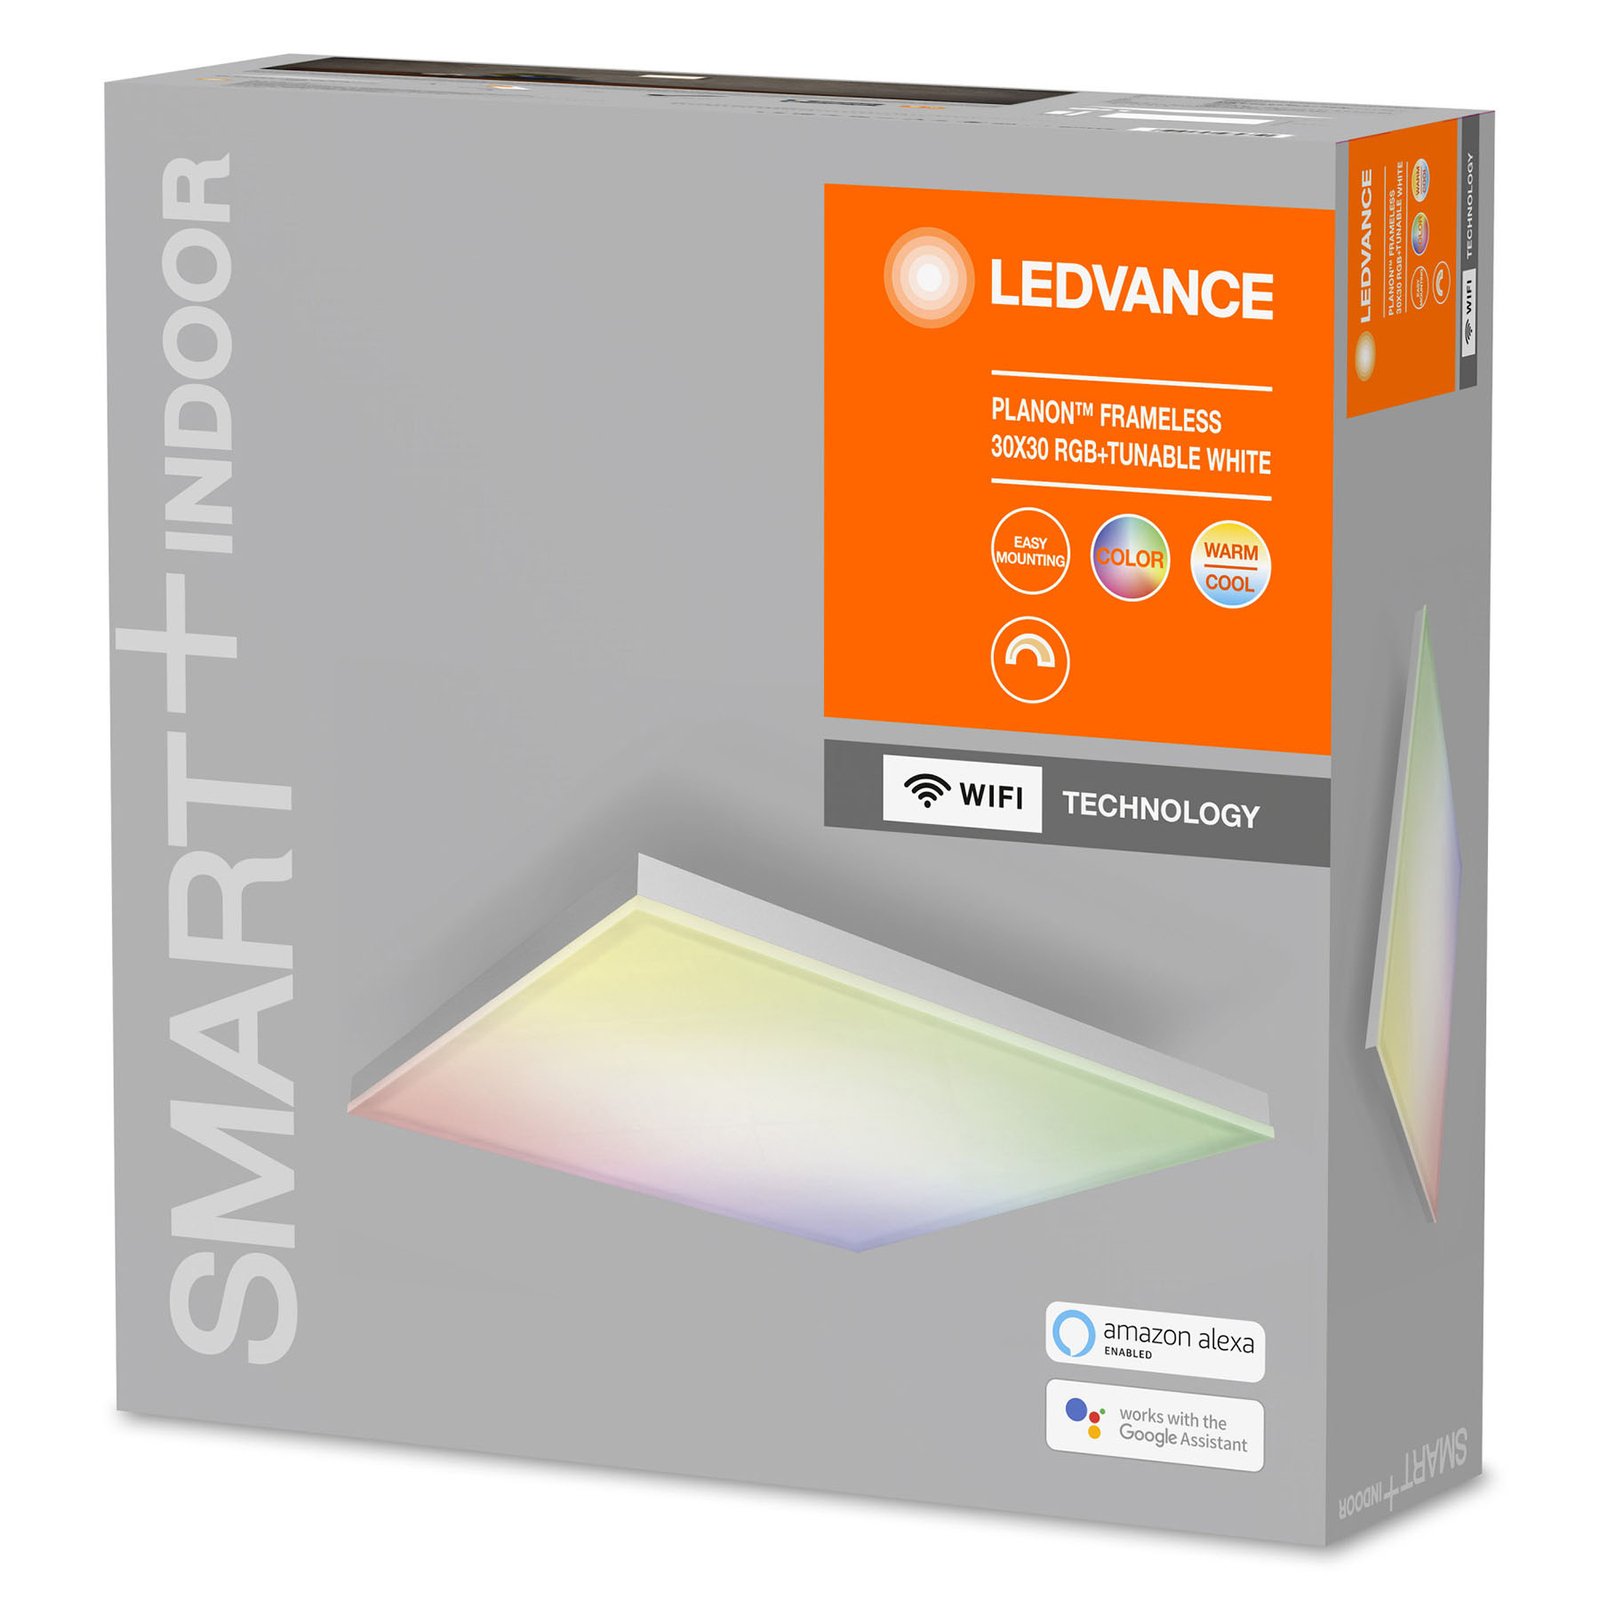 Painel LEDVANCE SMART+ WiFi Planon LED RGBW 30x30cm